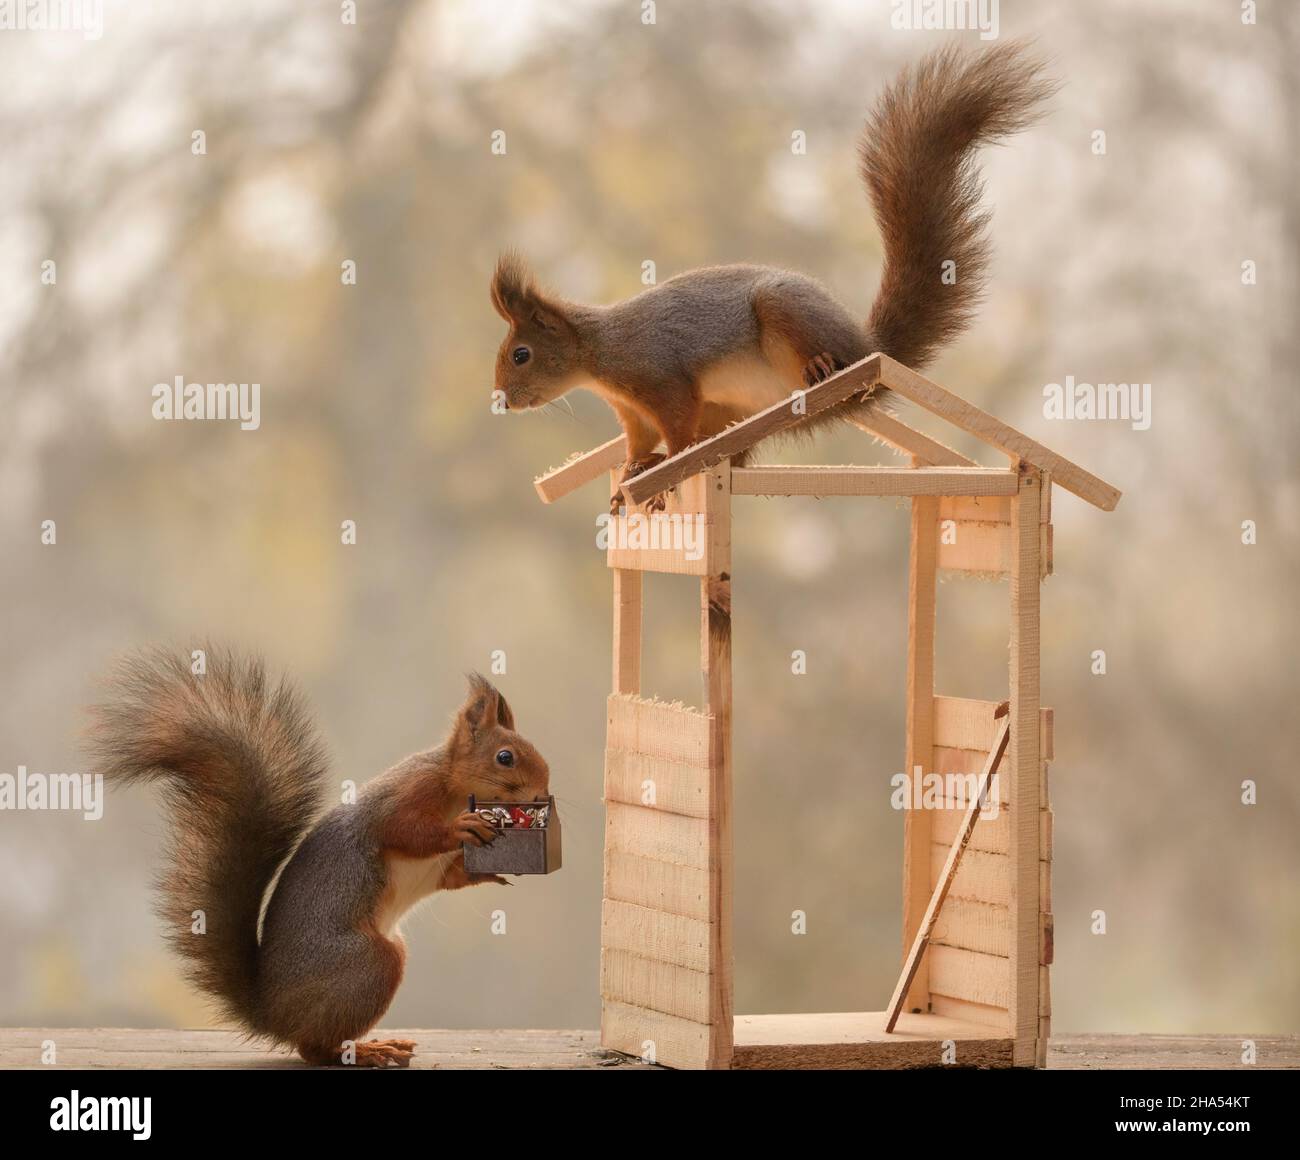 due scoiattoli rossi stanno costruendo una casa Foto Stock